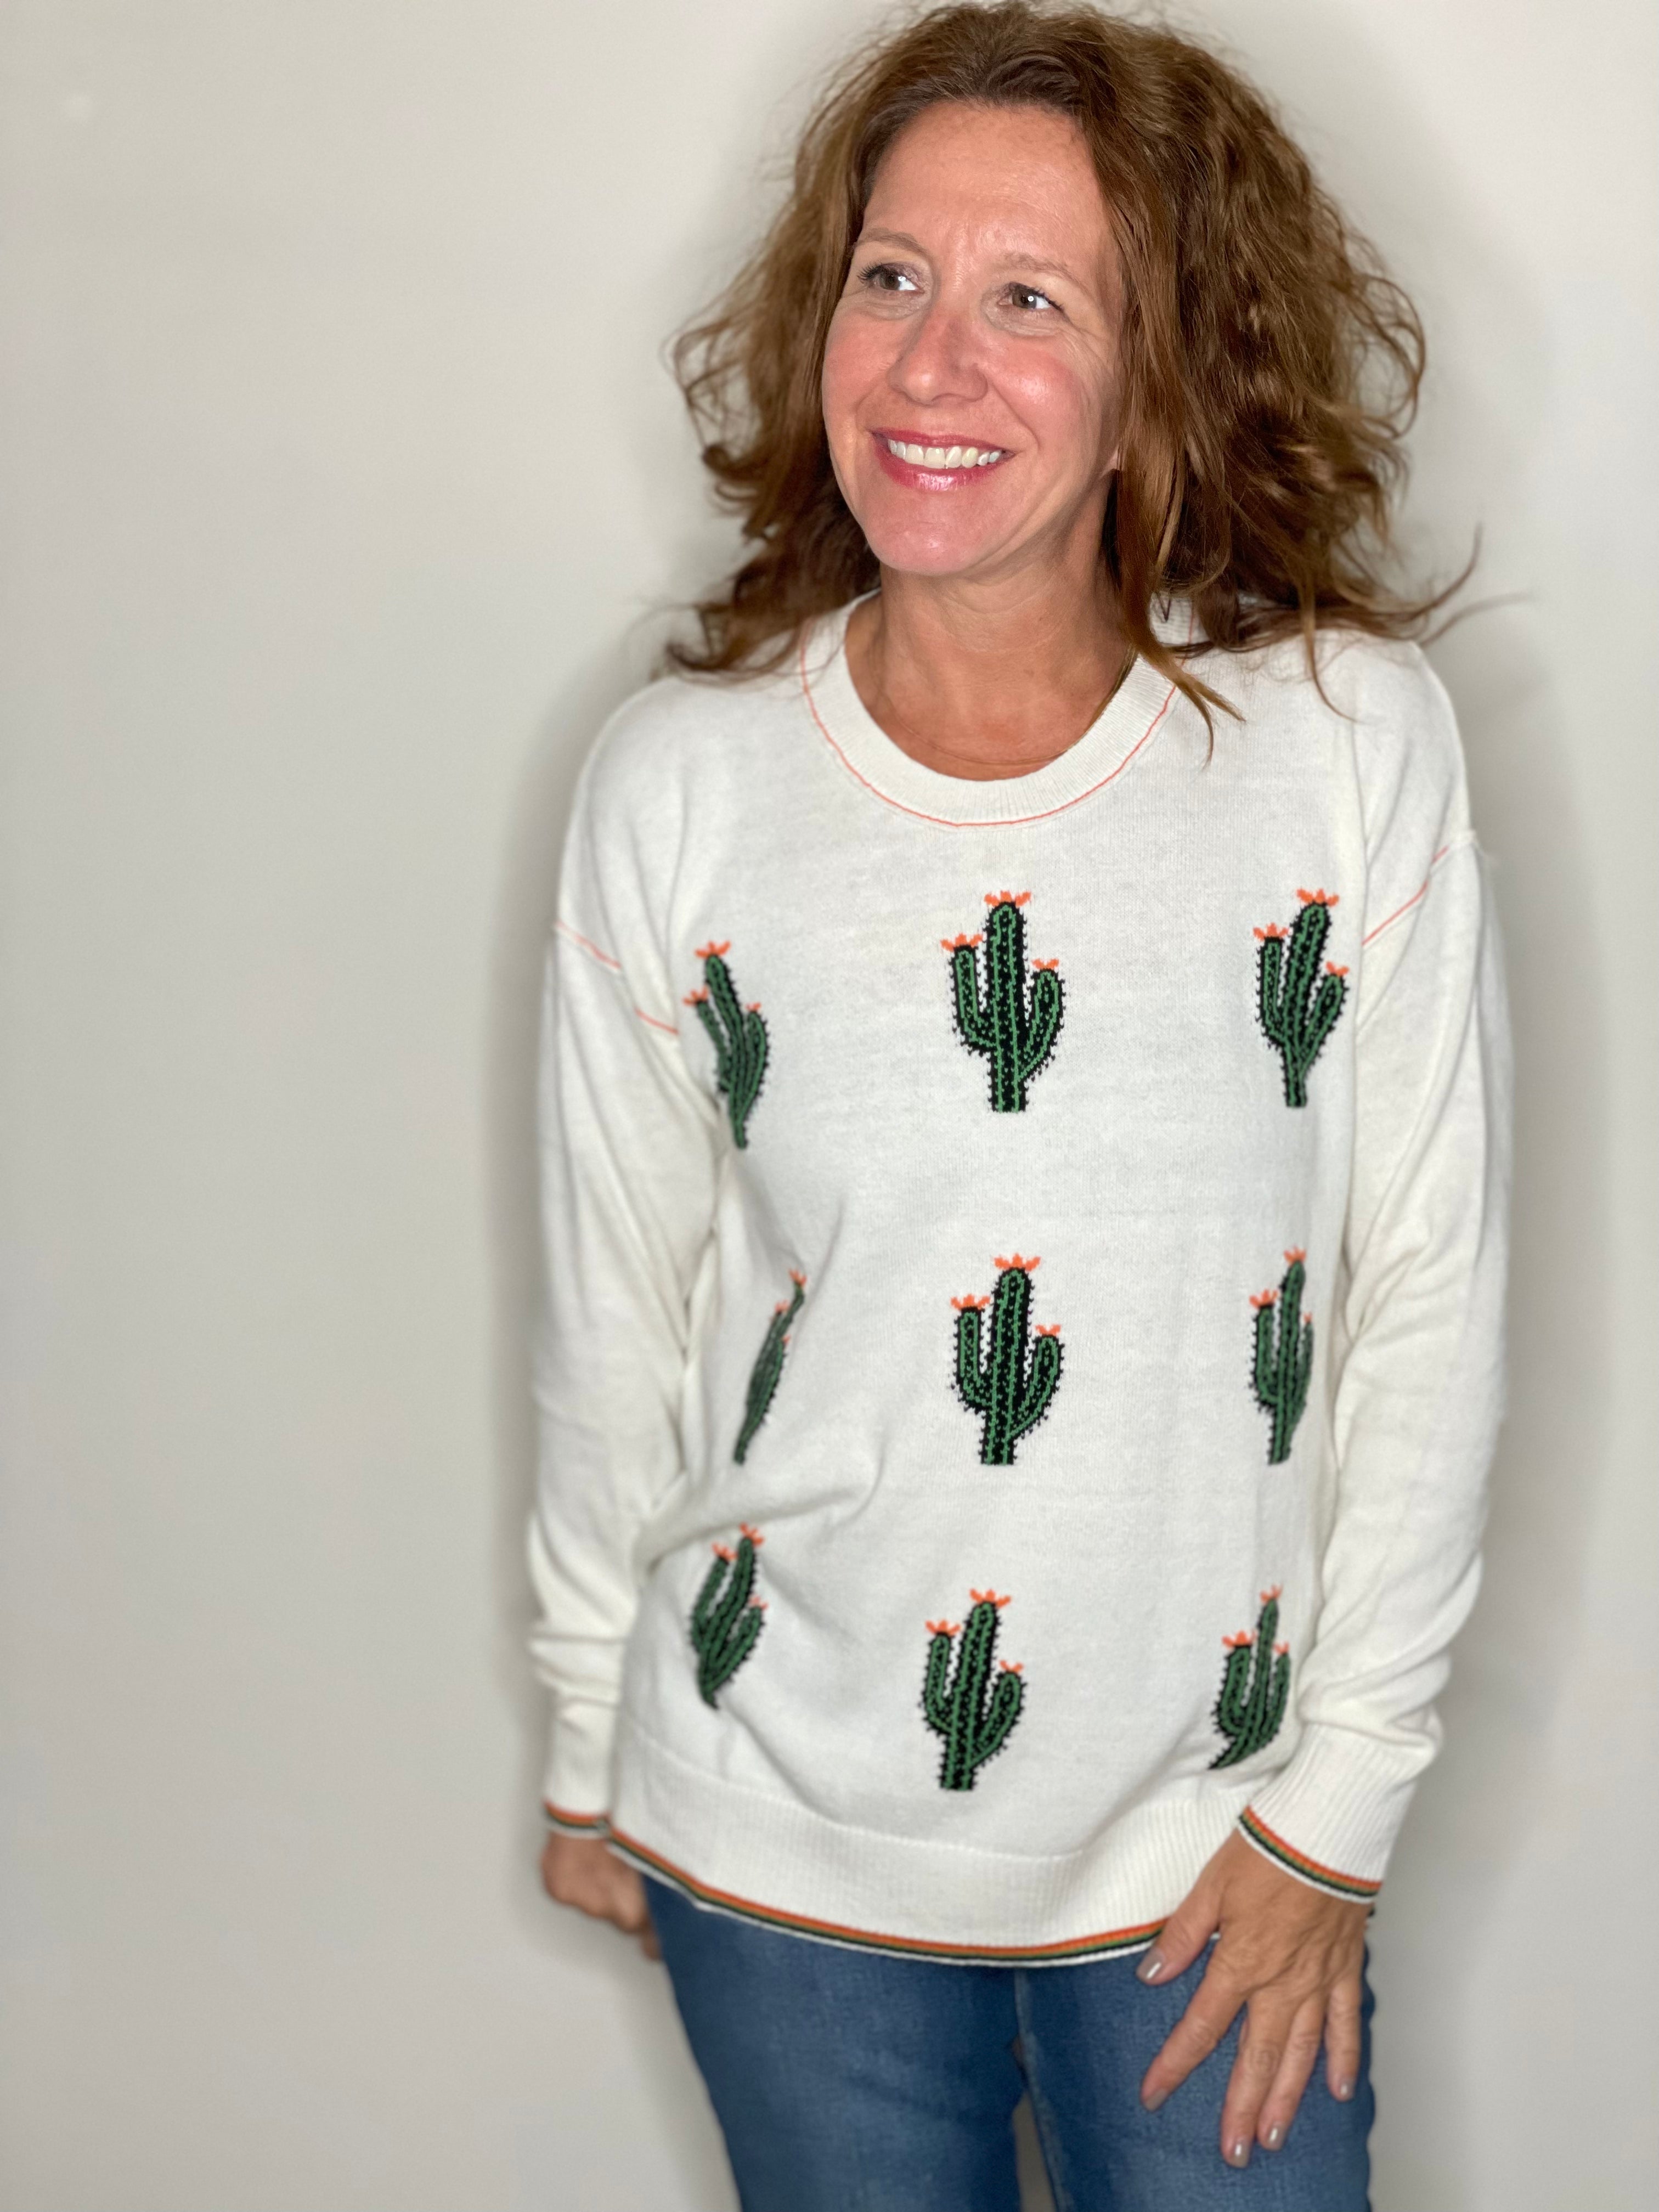 Zaket & Plover Cactus Sweater.